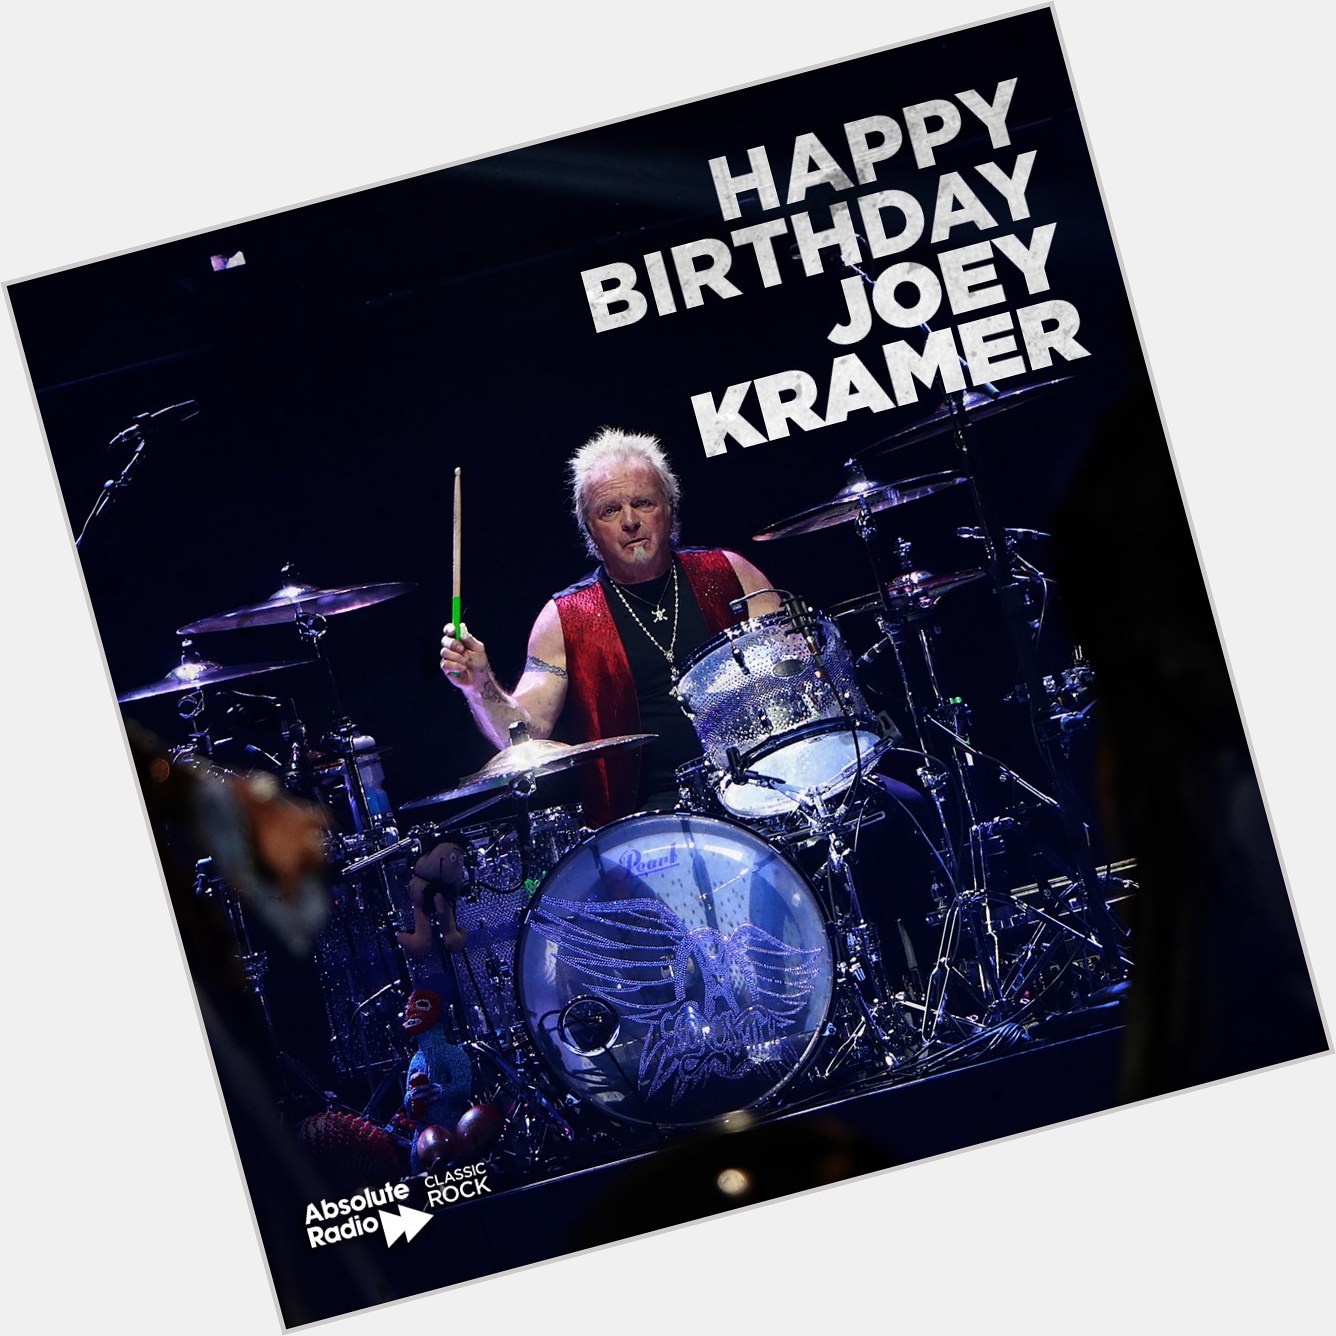 Happy birthday to the Kramedog! 

Aerosmith\s Joey Kramer is 73 today! 